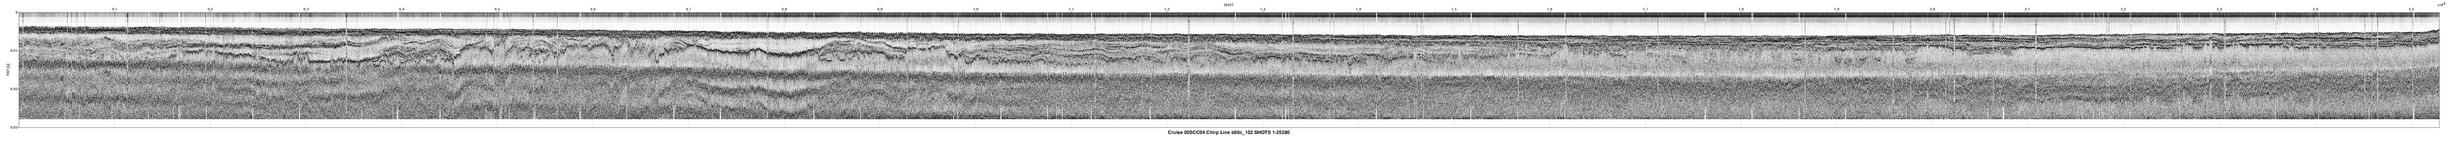 00SCC04 b00c_102 seismic profile image